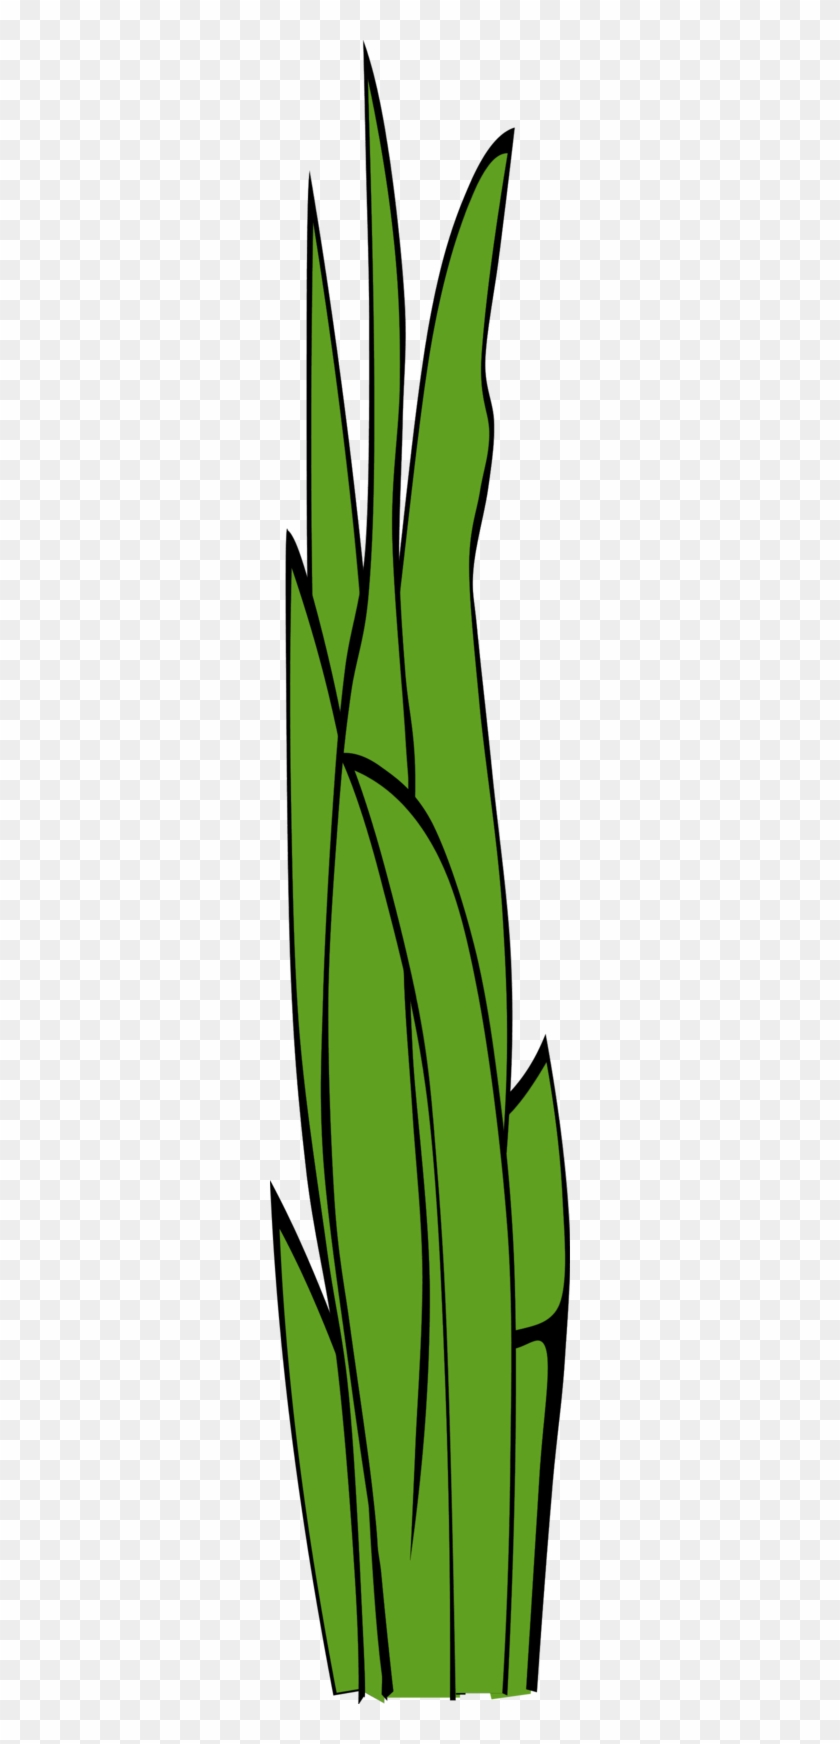 Grass Blades Clipart - Cartoon Blade Of Grass #240173